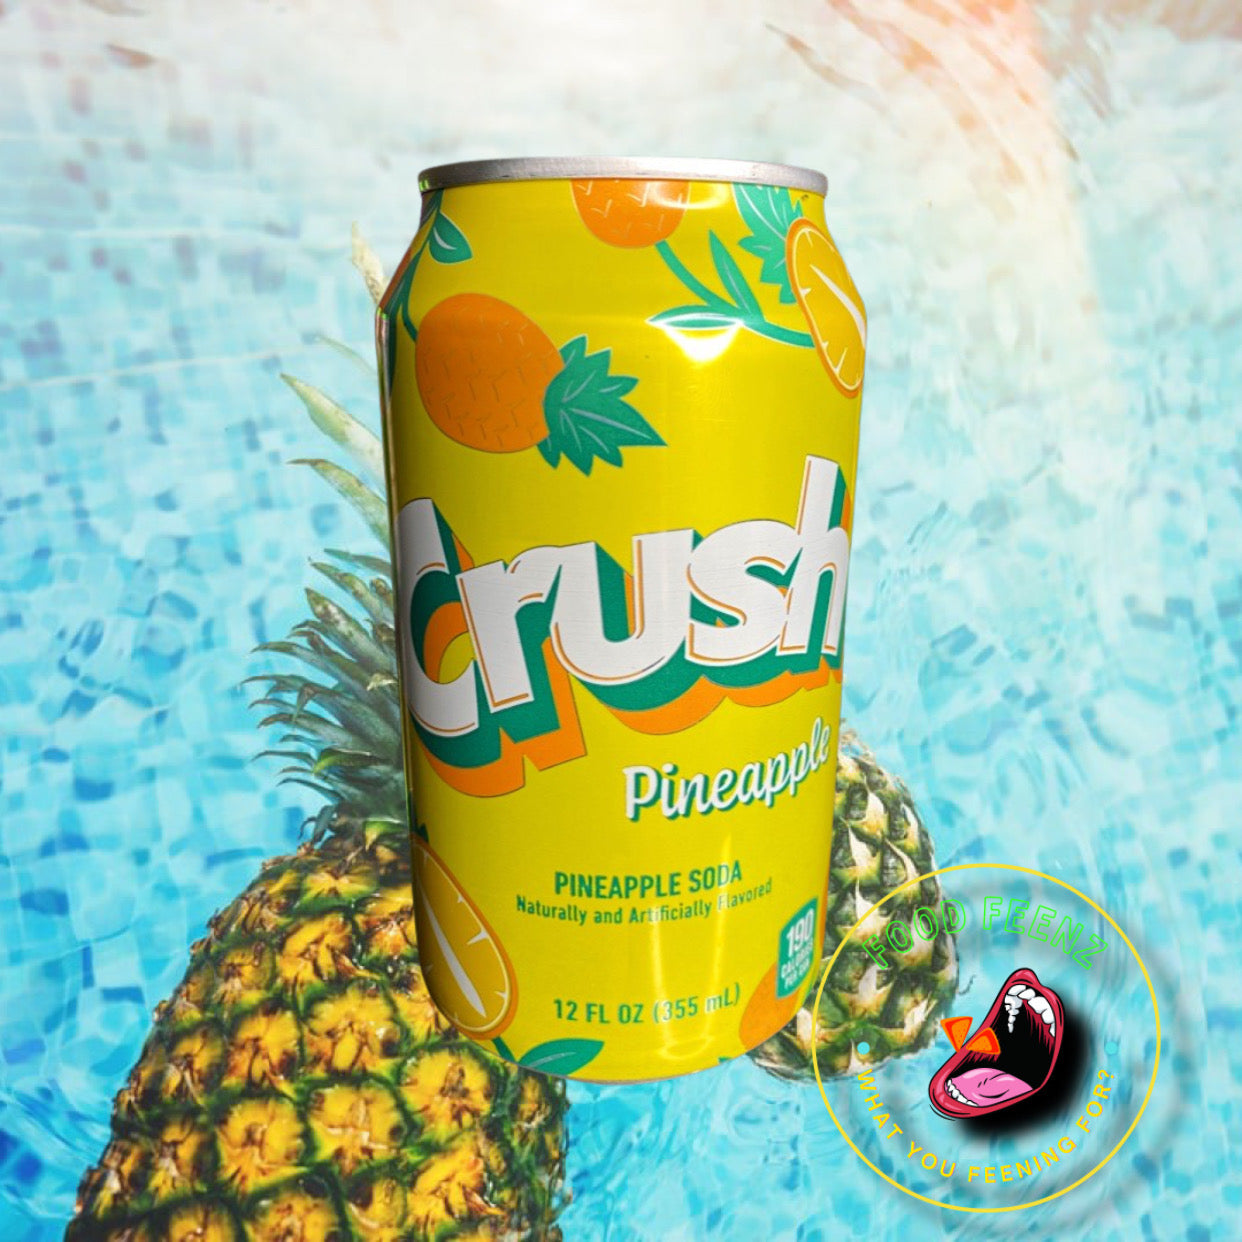 Crush Pineapple Soda